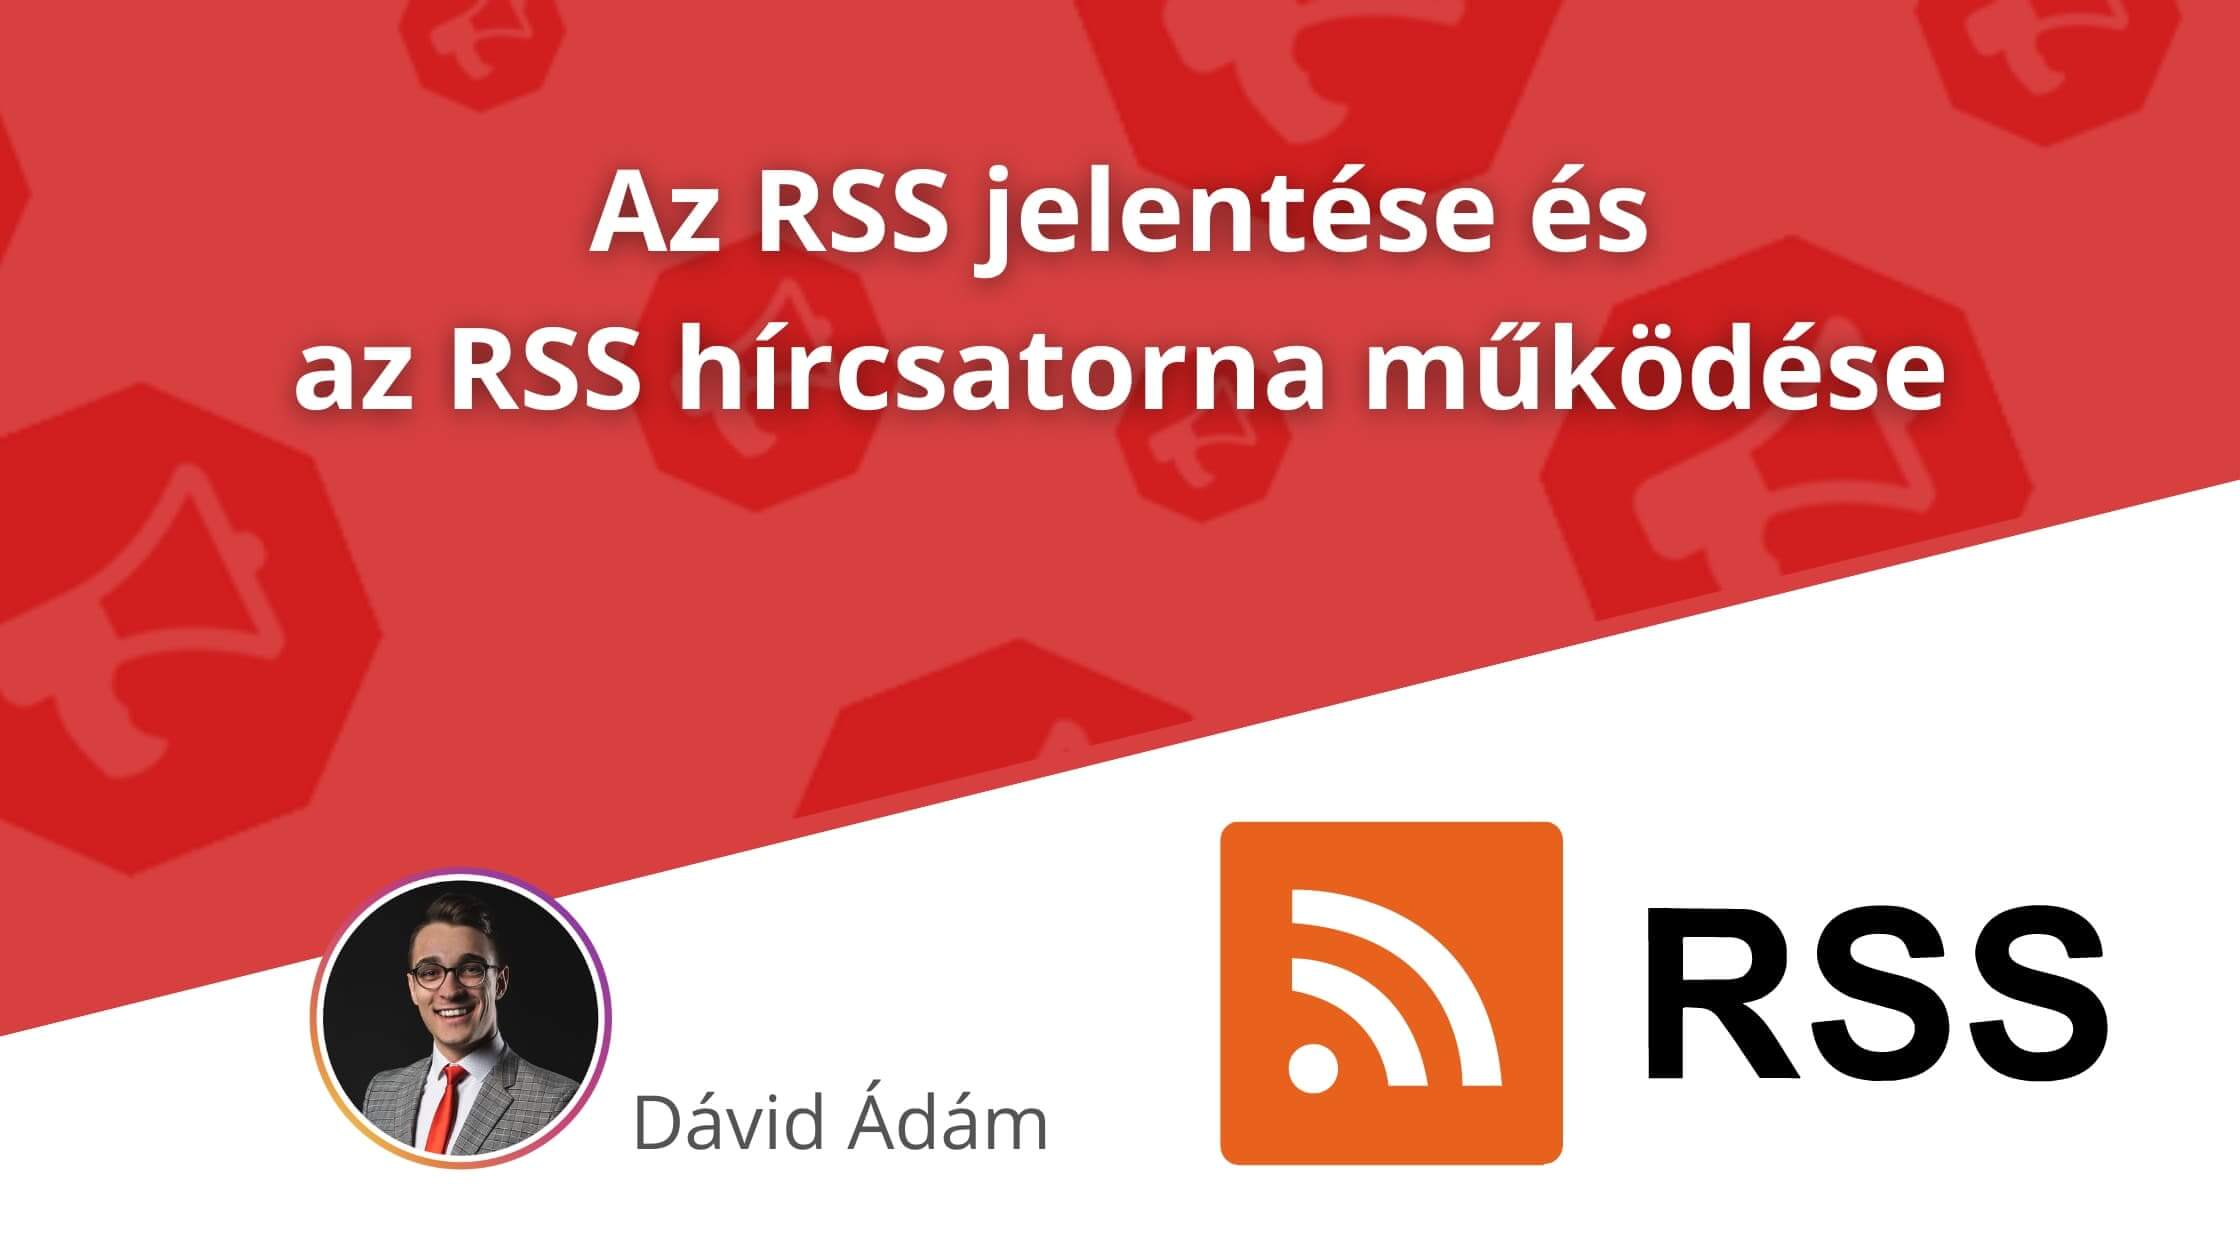 RSS jelentése